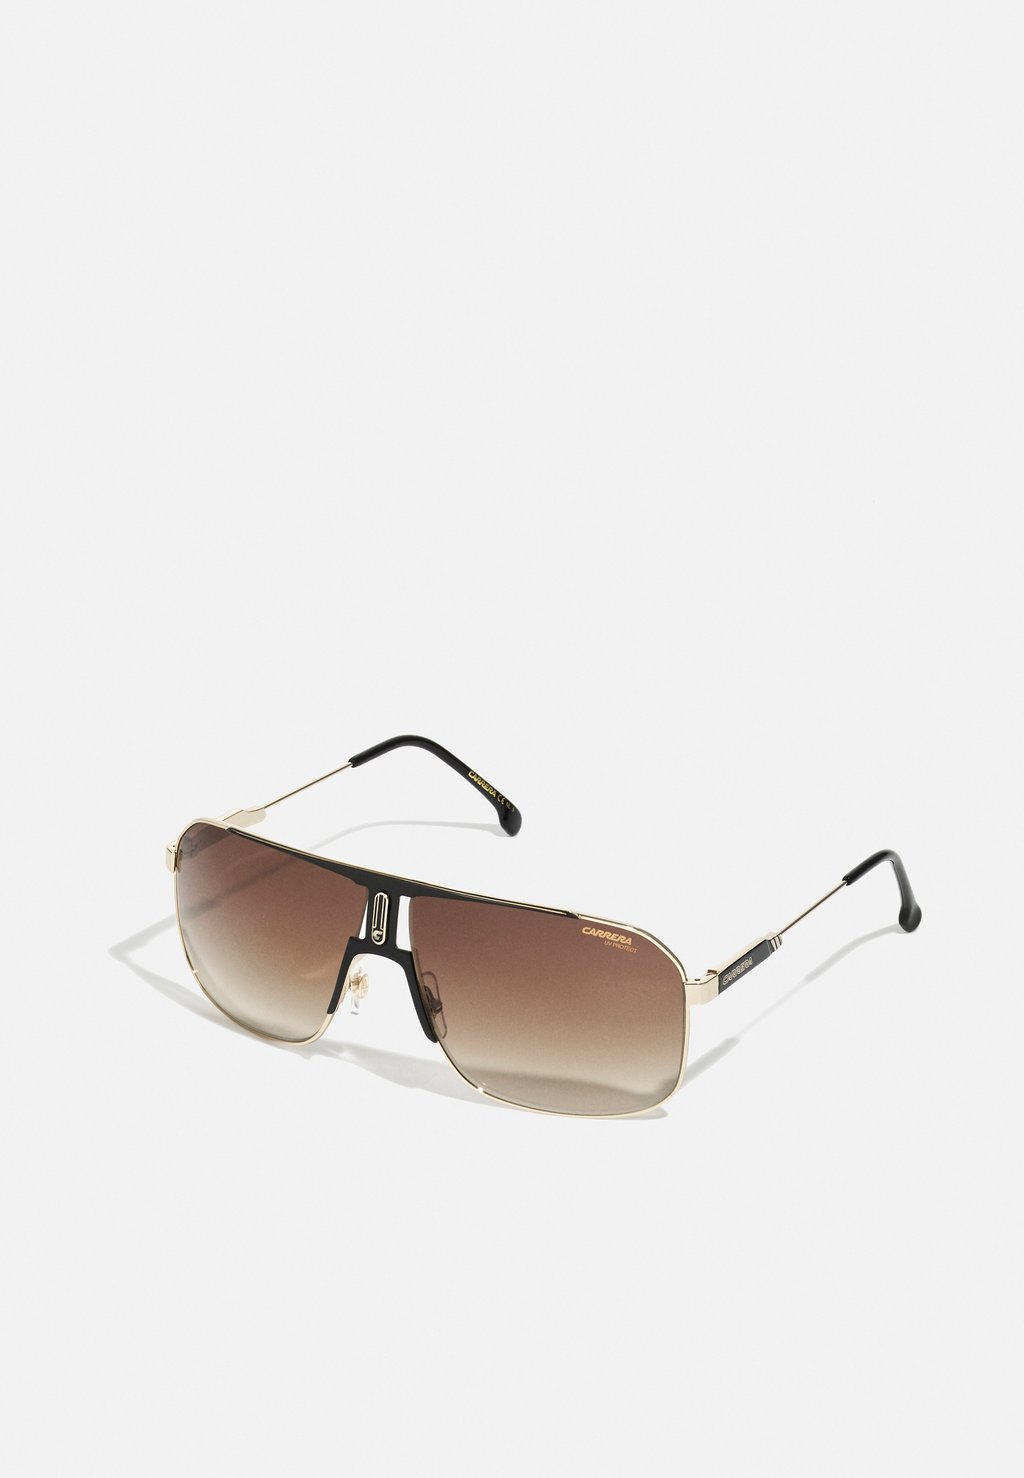 Солнцезащитные очки Carrera, чёрные/золотые